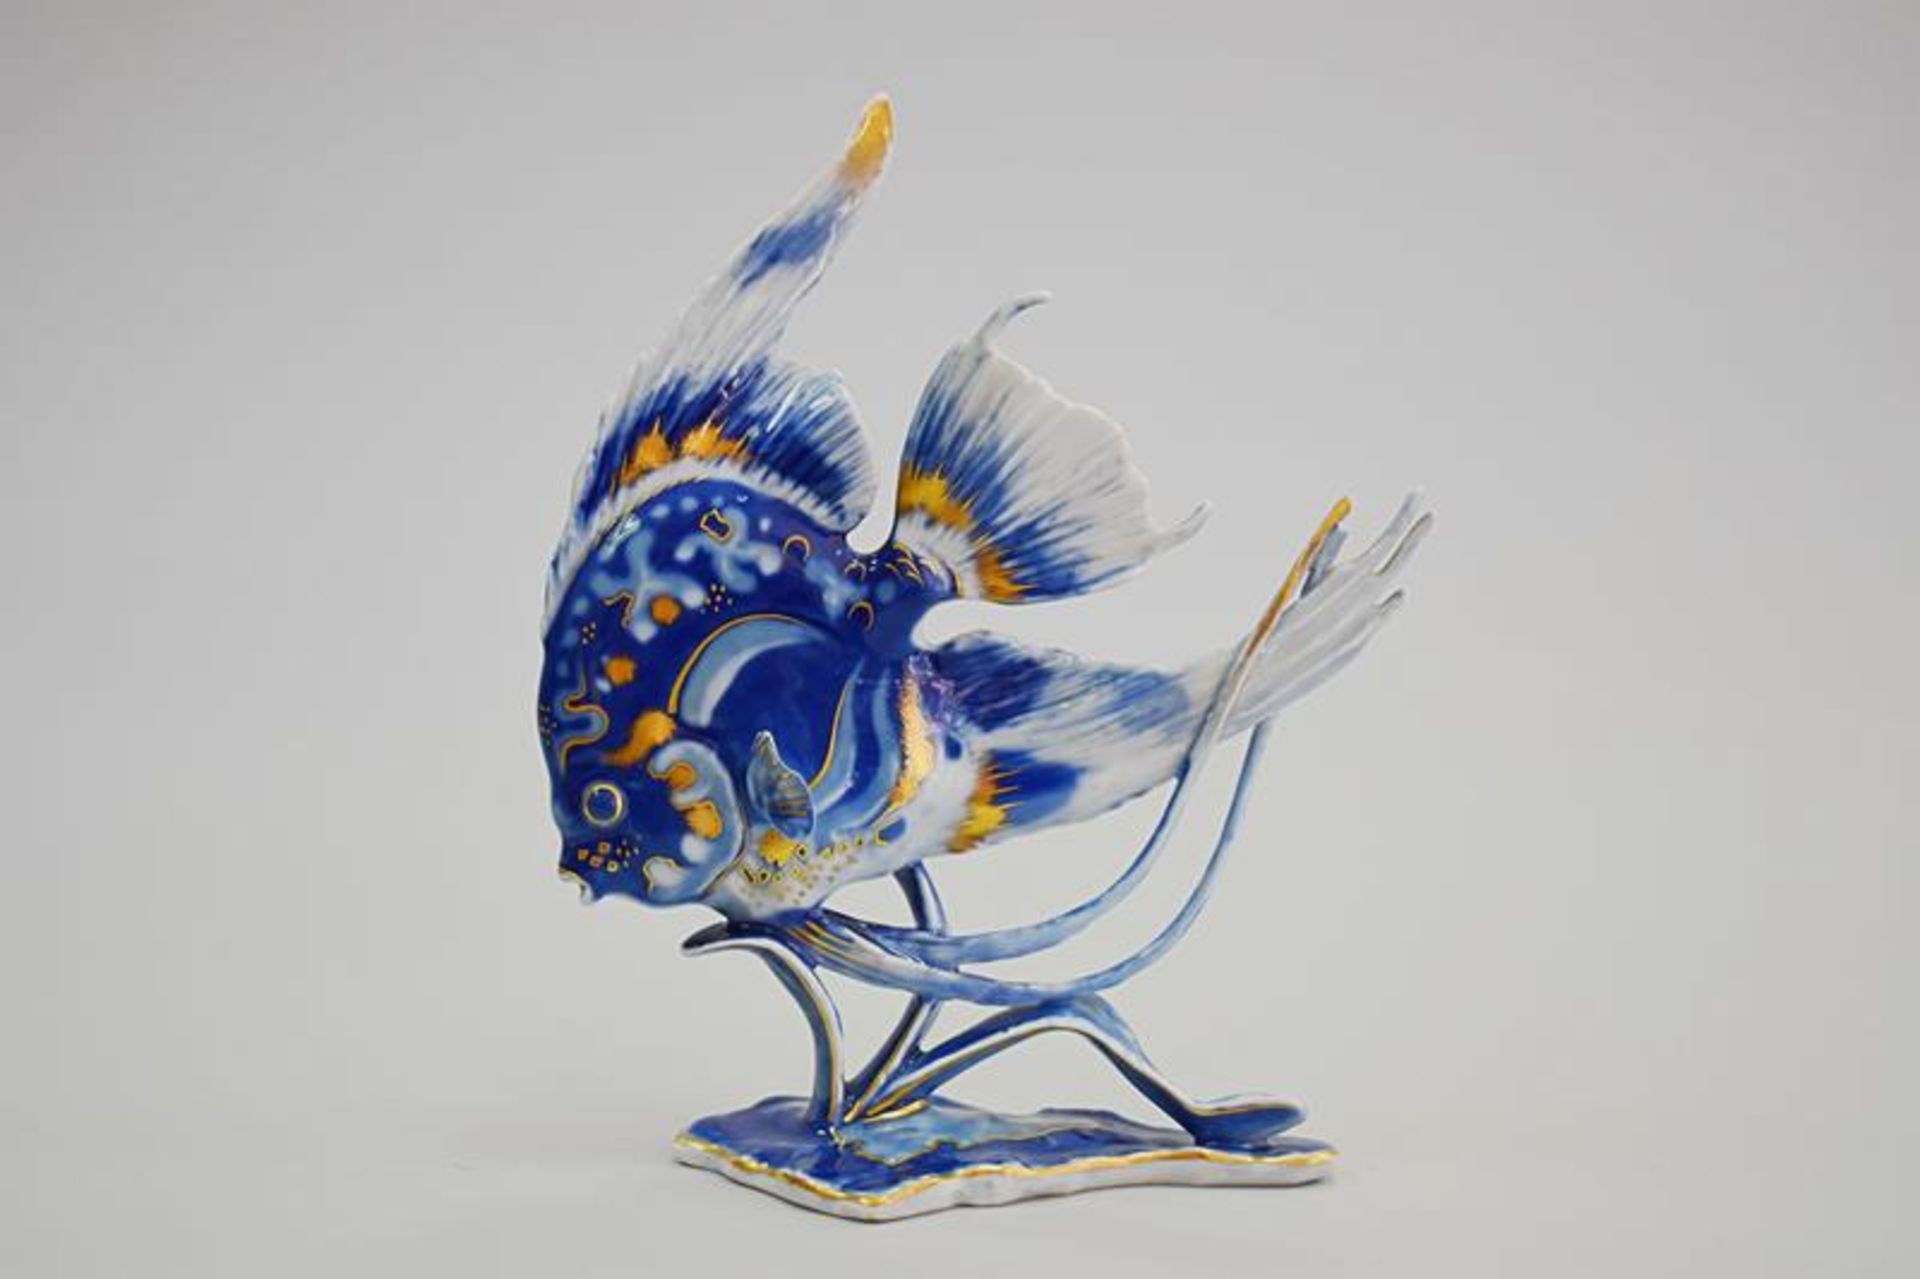 Porzellanfigur Rosenthal FischMindestpreis 100Bezeichnung Porzellanfigur Rosenthal Fisch